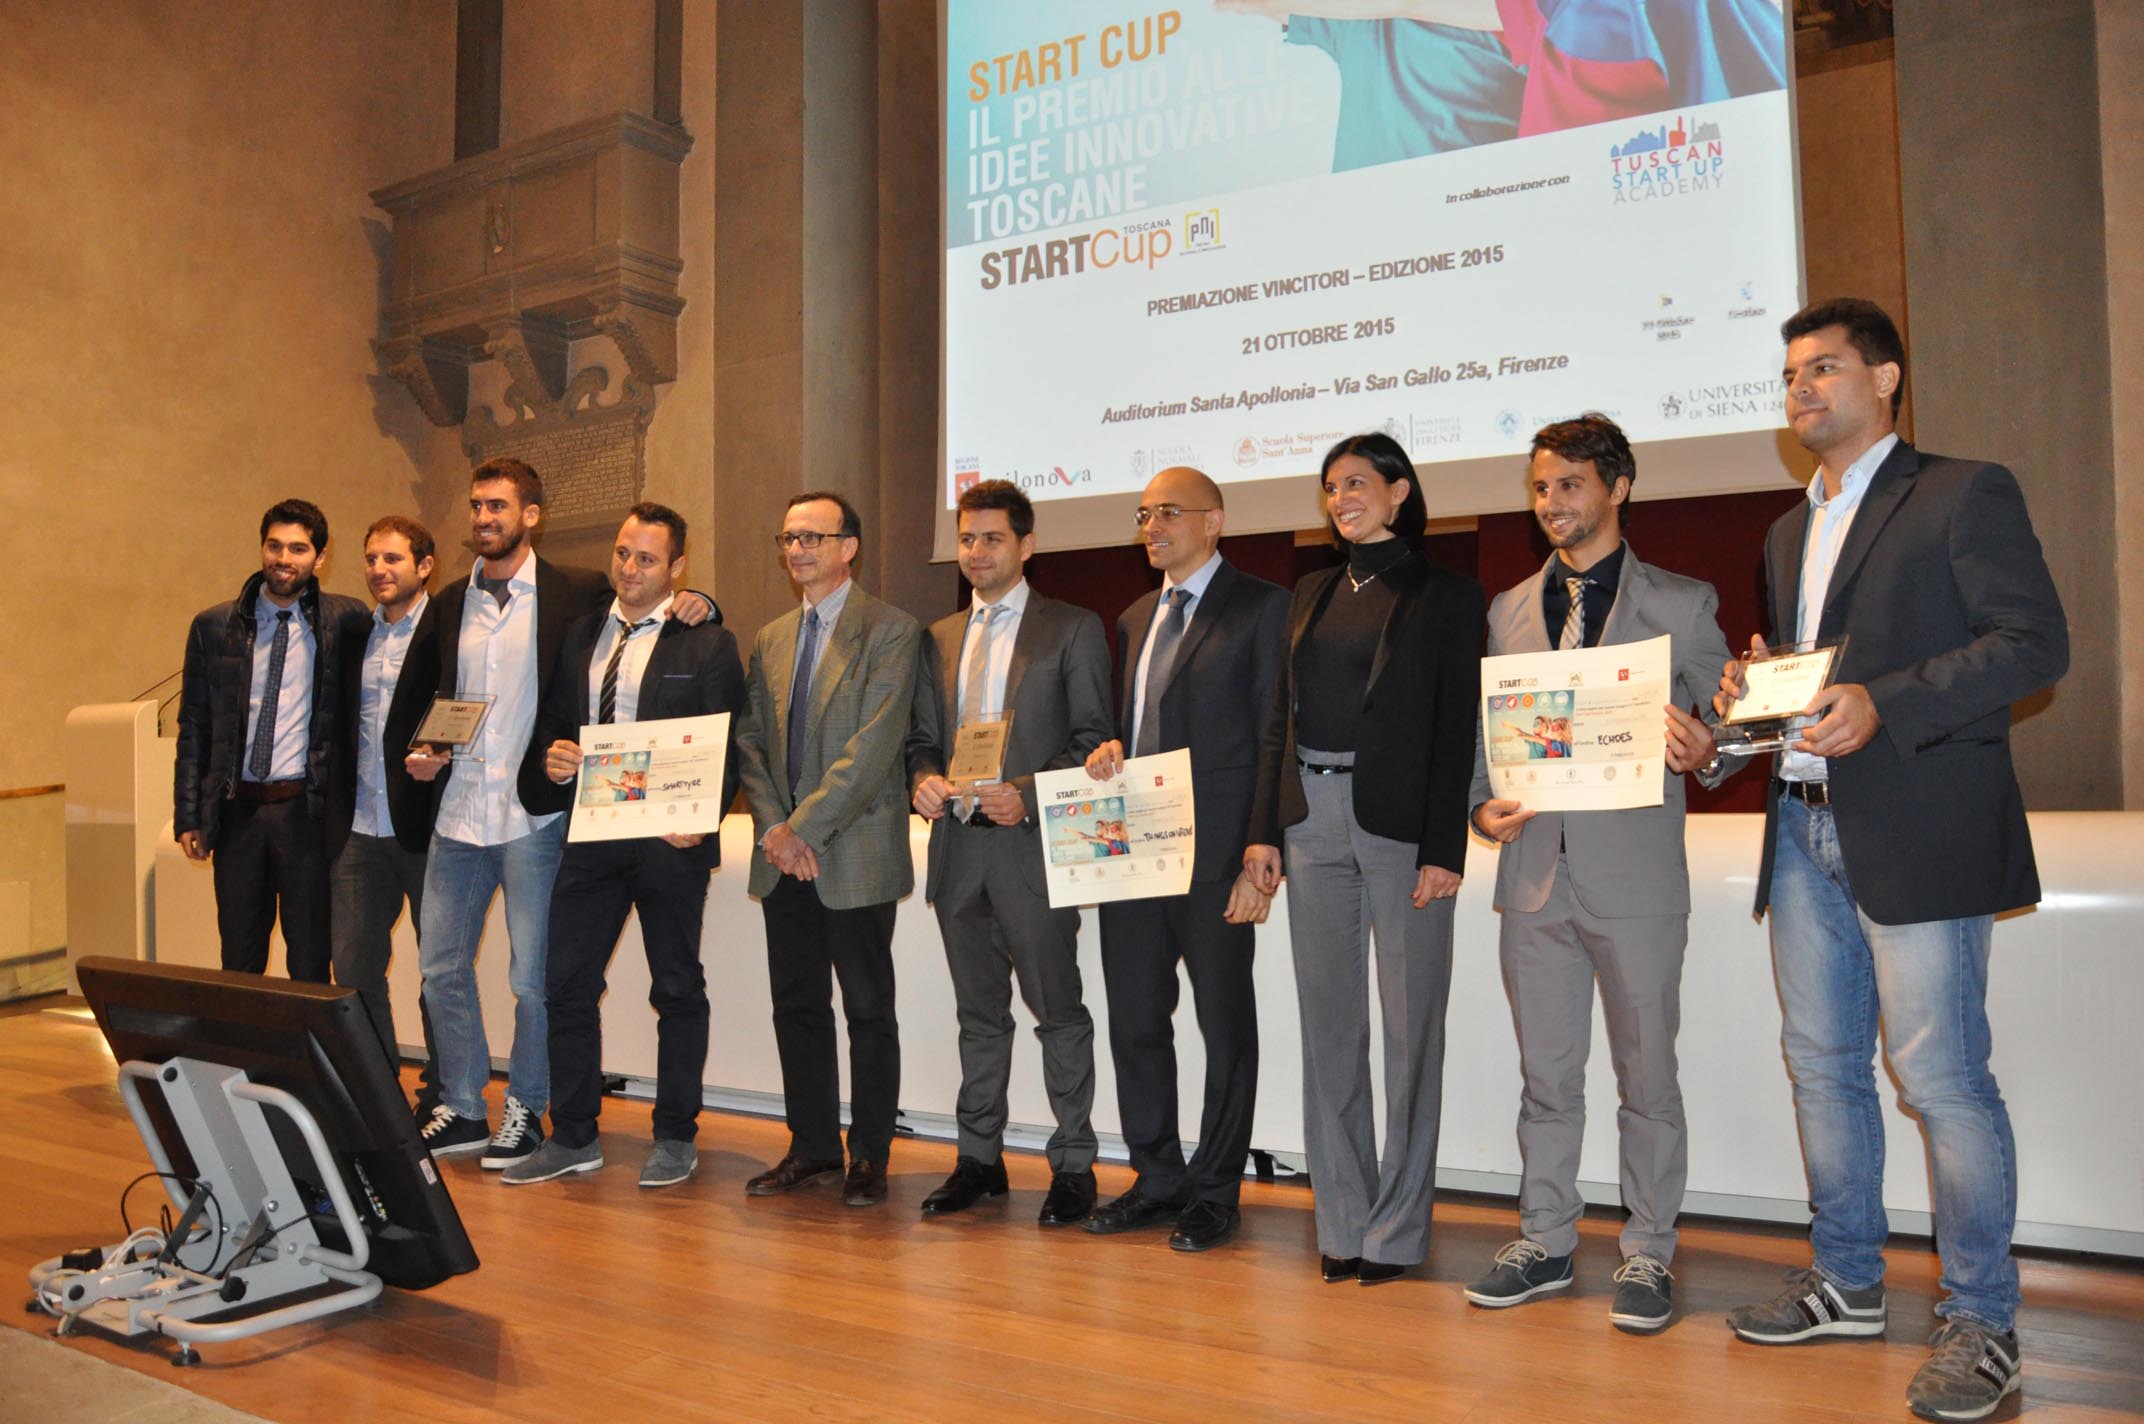 cerimonia finale della Start Cup Toscana 2015 presso l'Auditorium di Sant'Apollonia